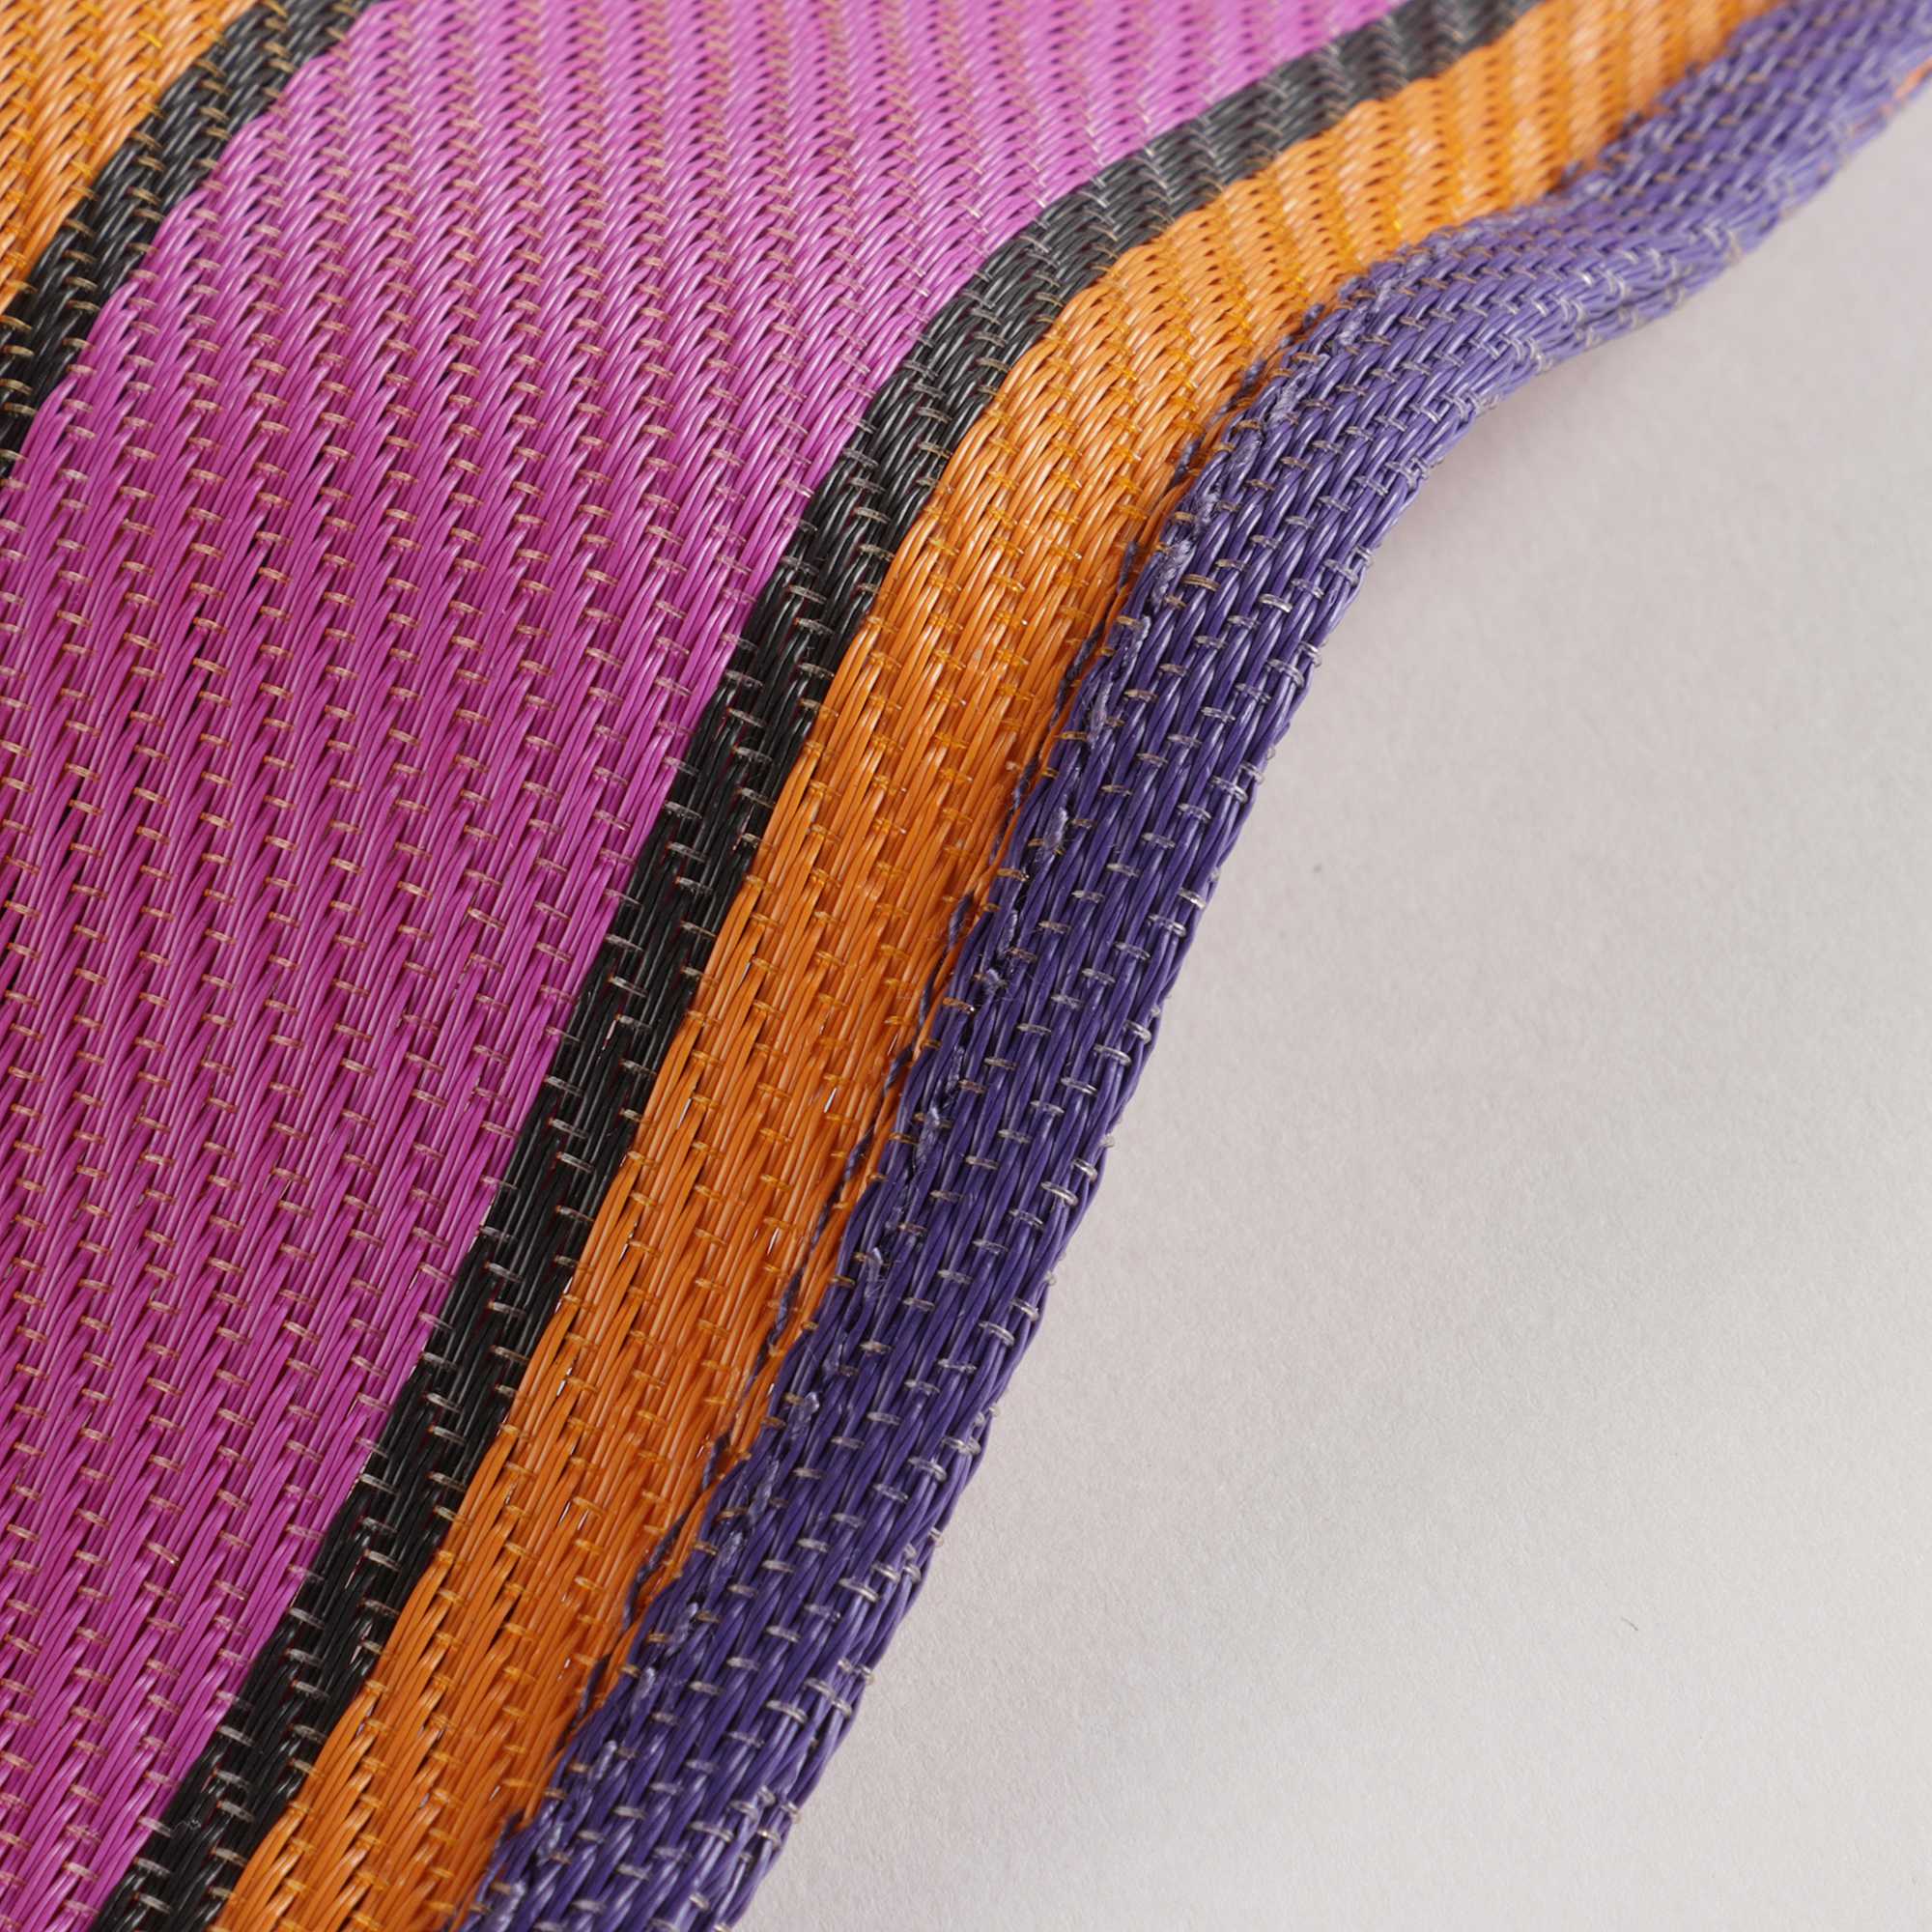 紫色条纹Logo手提袋(39x31cm)